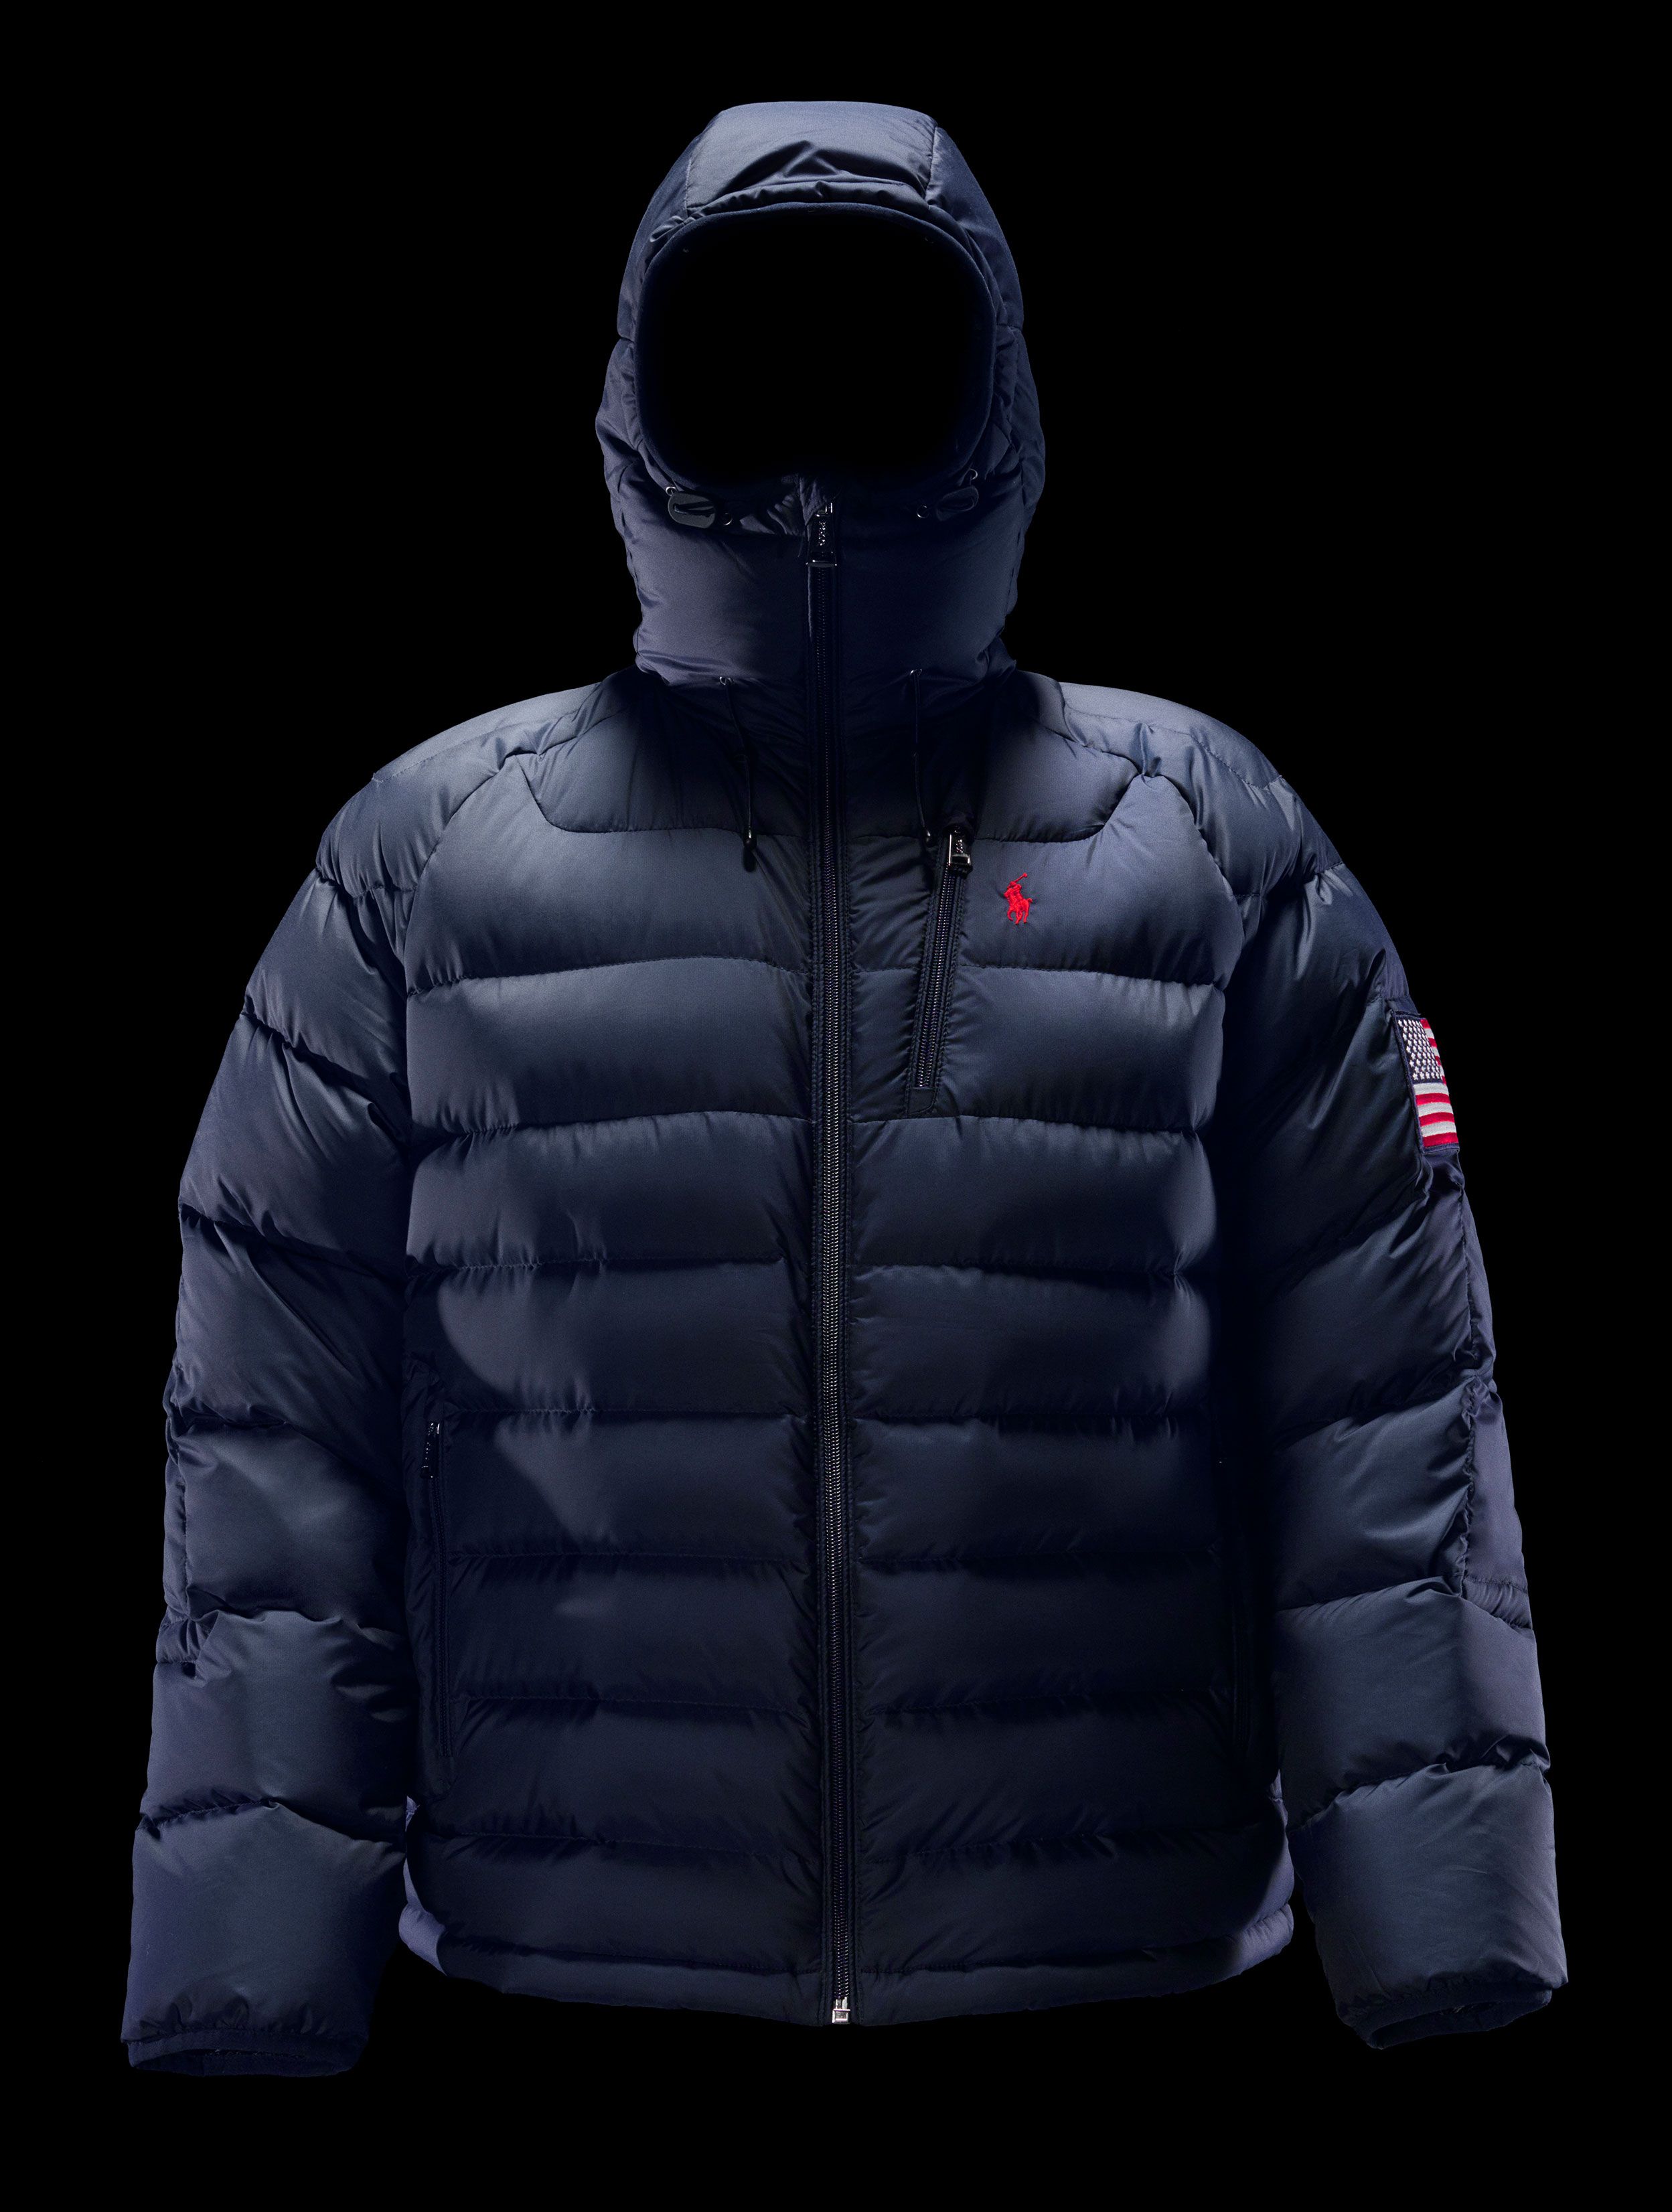 polo 11 jacket price